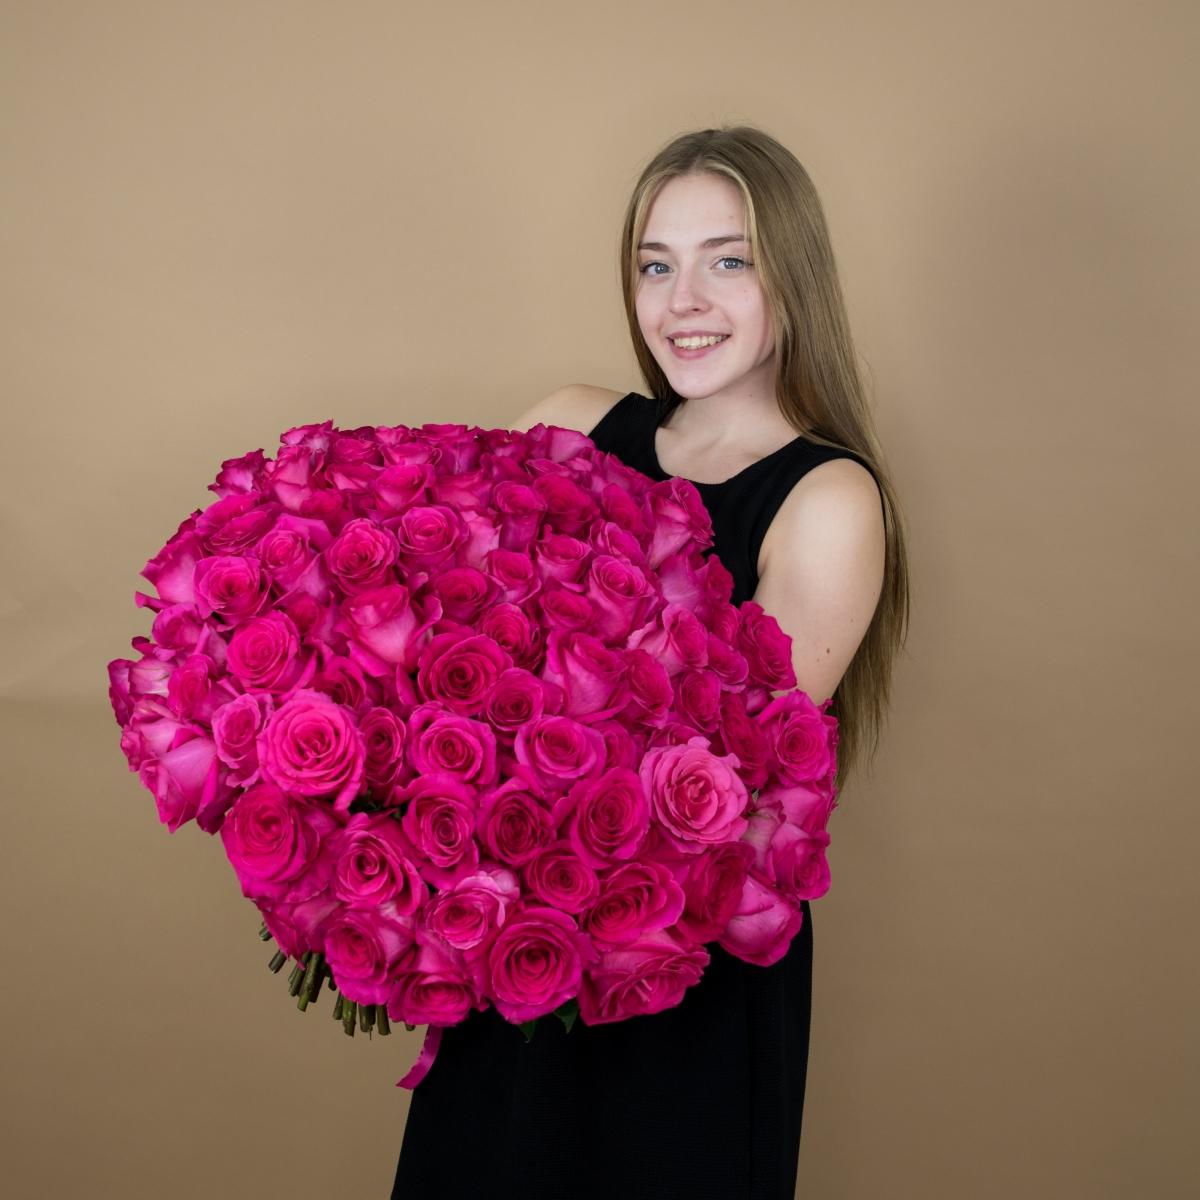 Букет из розовых роз 75 шт. (40 см) (код товара  17787)